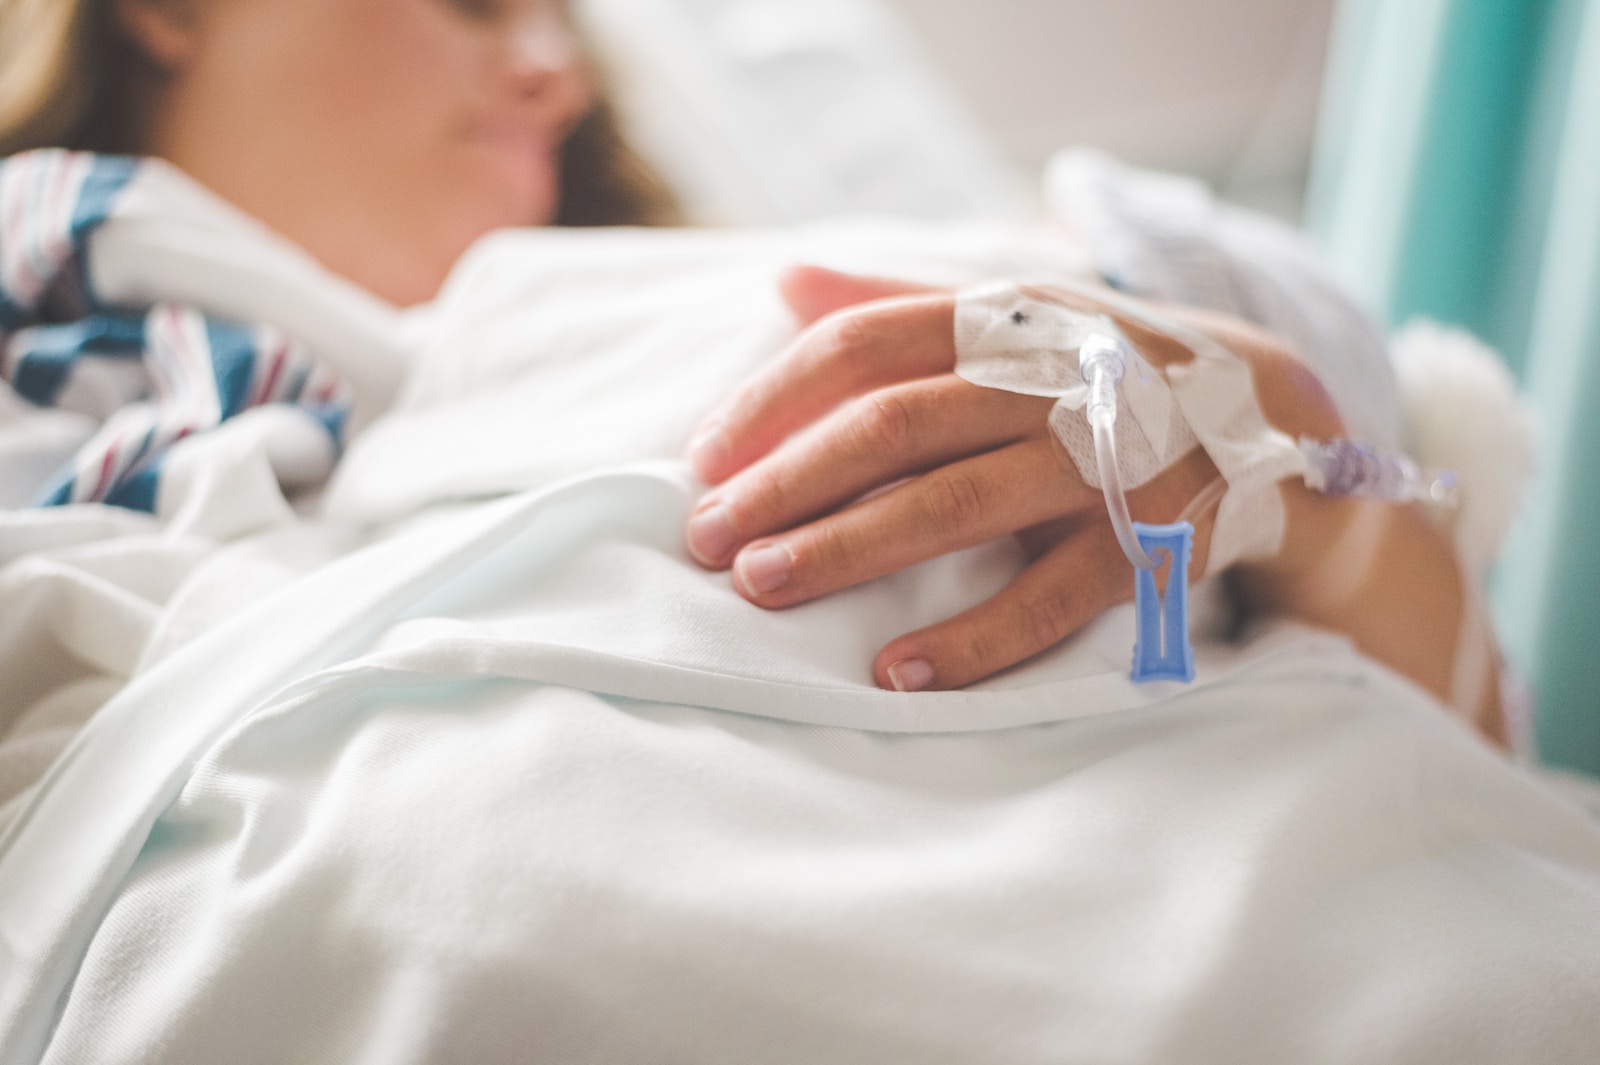 kvinne i sykehusseng med veneflon i armen